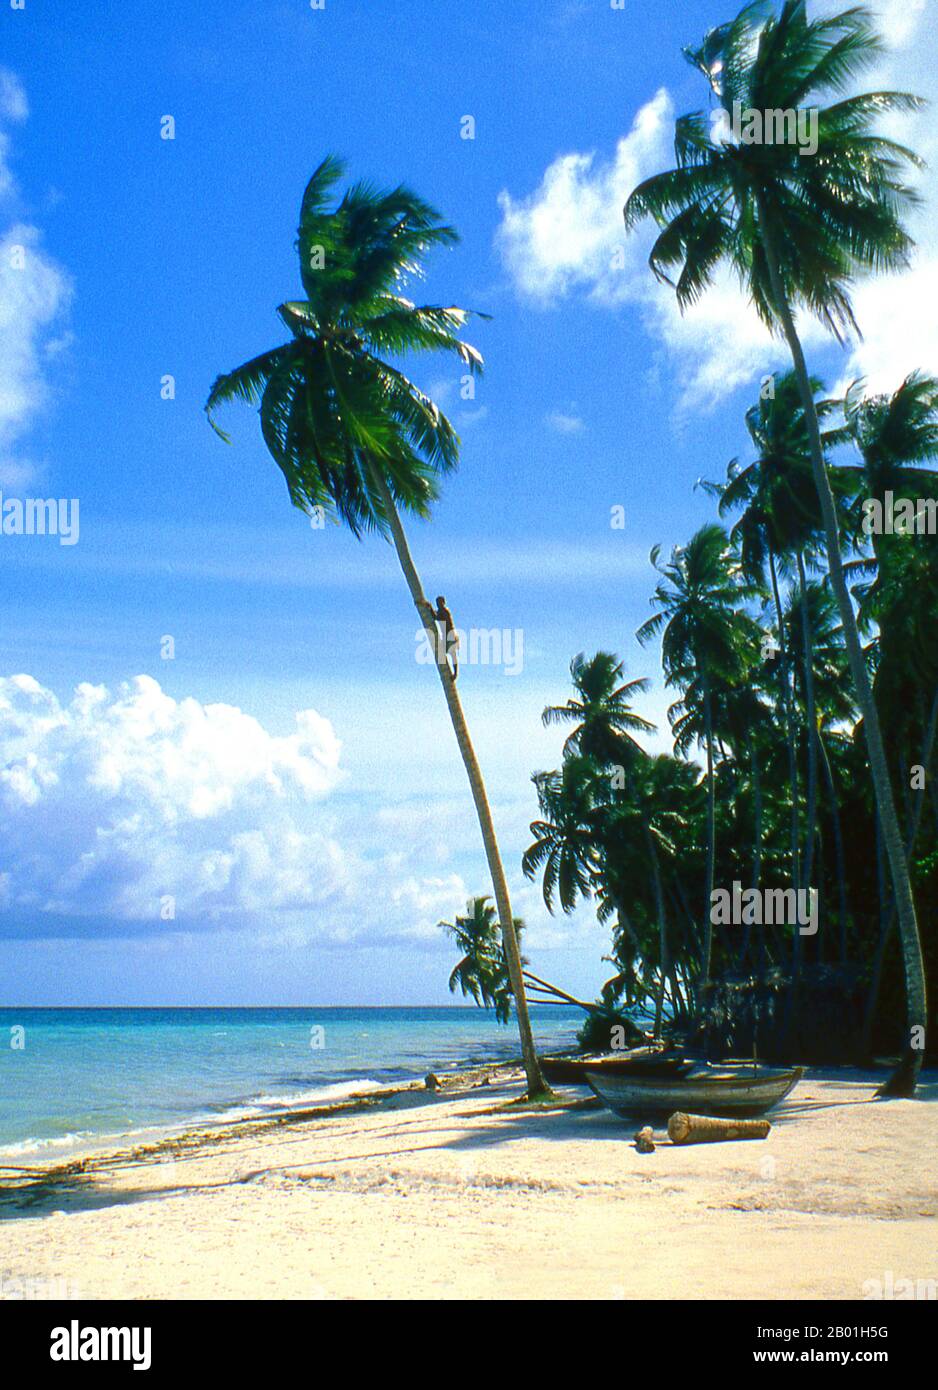 Malediven: Ein raveri- oder toddy Sammler klettert auf eine Kokospalme. Asiens kleinste und am wenigsten bekannte Nation, die Republik der Malediven, liegt von Norden nach Süden verstreut über einen 750 Kilometer langen Streifen des Indischen Ozeans, 500 Kilometer südwestlich von Sri Lanka. Mehr als 1000 Inseln, zusammen mit unzähligen Banken und Riffen, sind in einer Kette von 19 Atolls zusammengefasst, die sich von einem Punkt genau westlich von Colombo bis kurz südlich des Äquators erstreckt. Die Atolls, die aus großen Korallenringen auf der Grundlage des U-Boots Laccadive-Chagos gebildet wurden, variieren stark in der Größe. Stockfoto